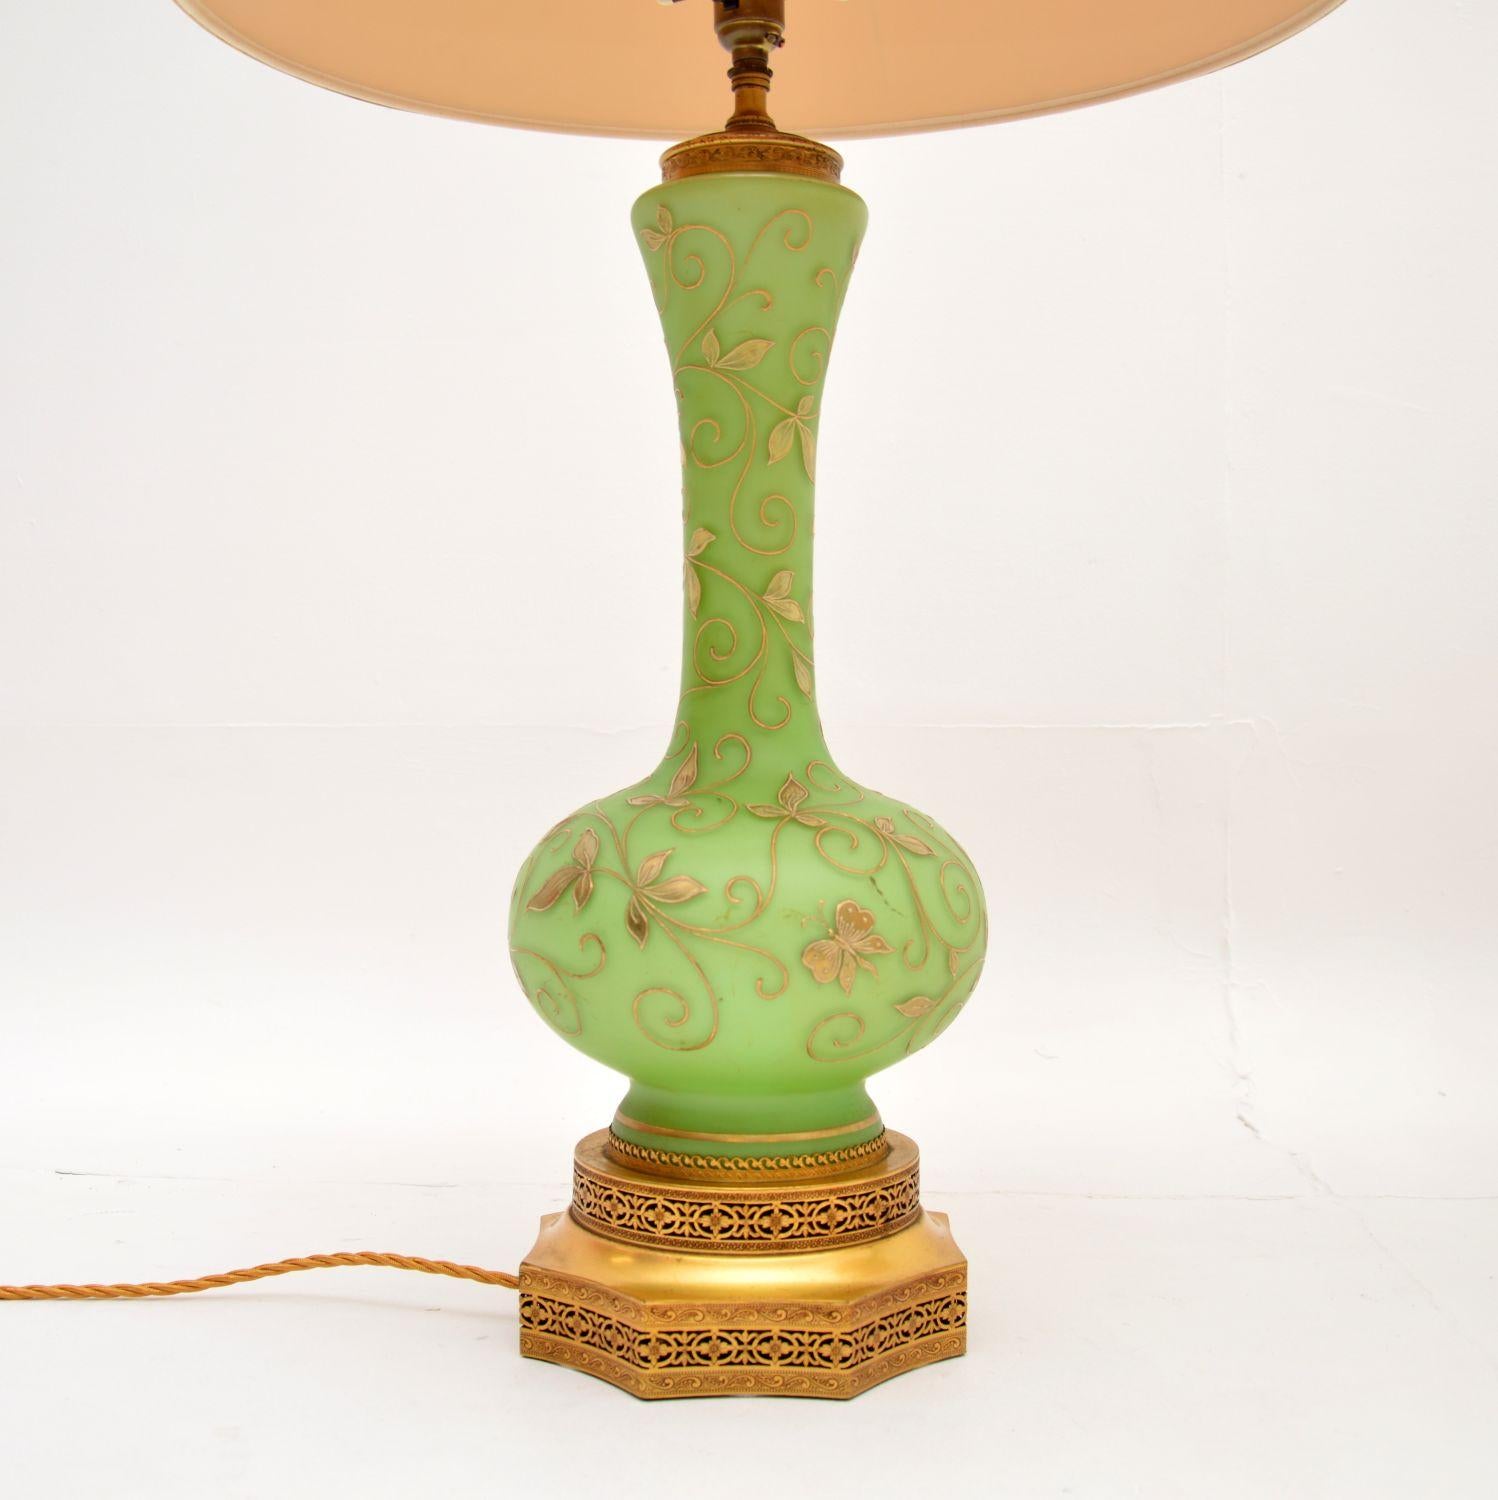 antique table lamps 1900